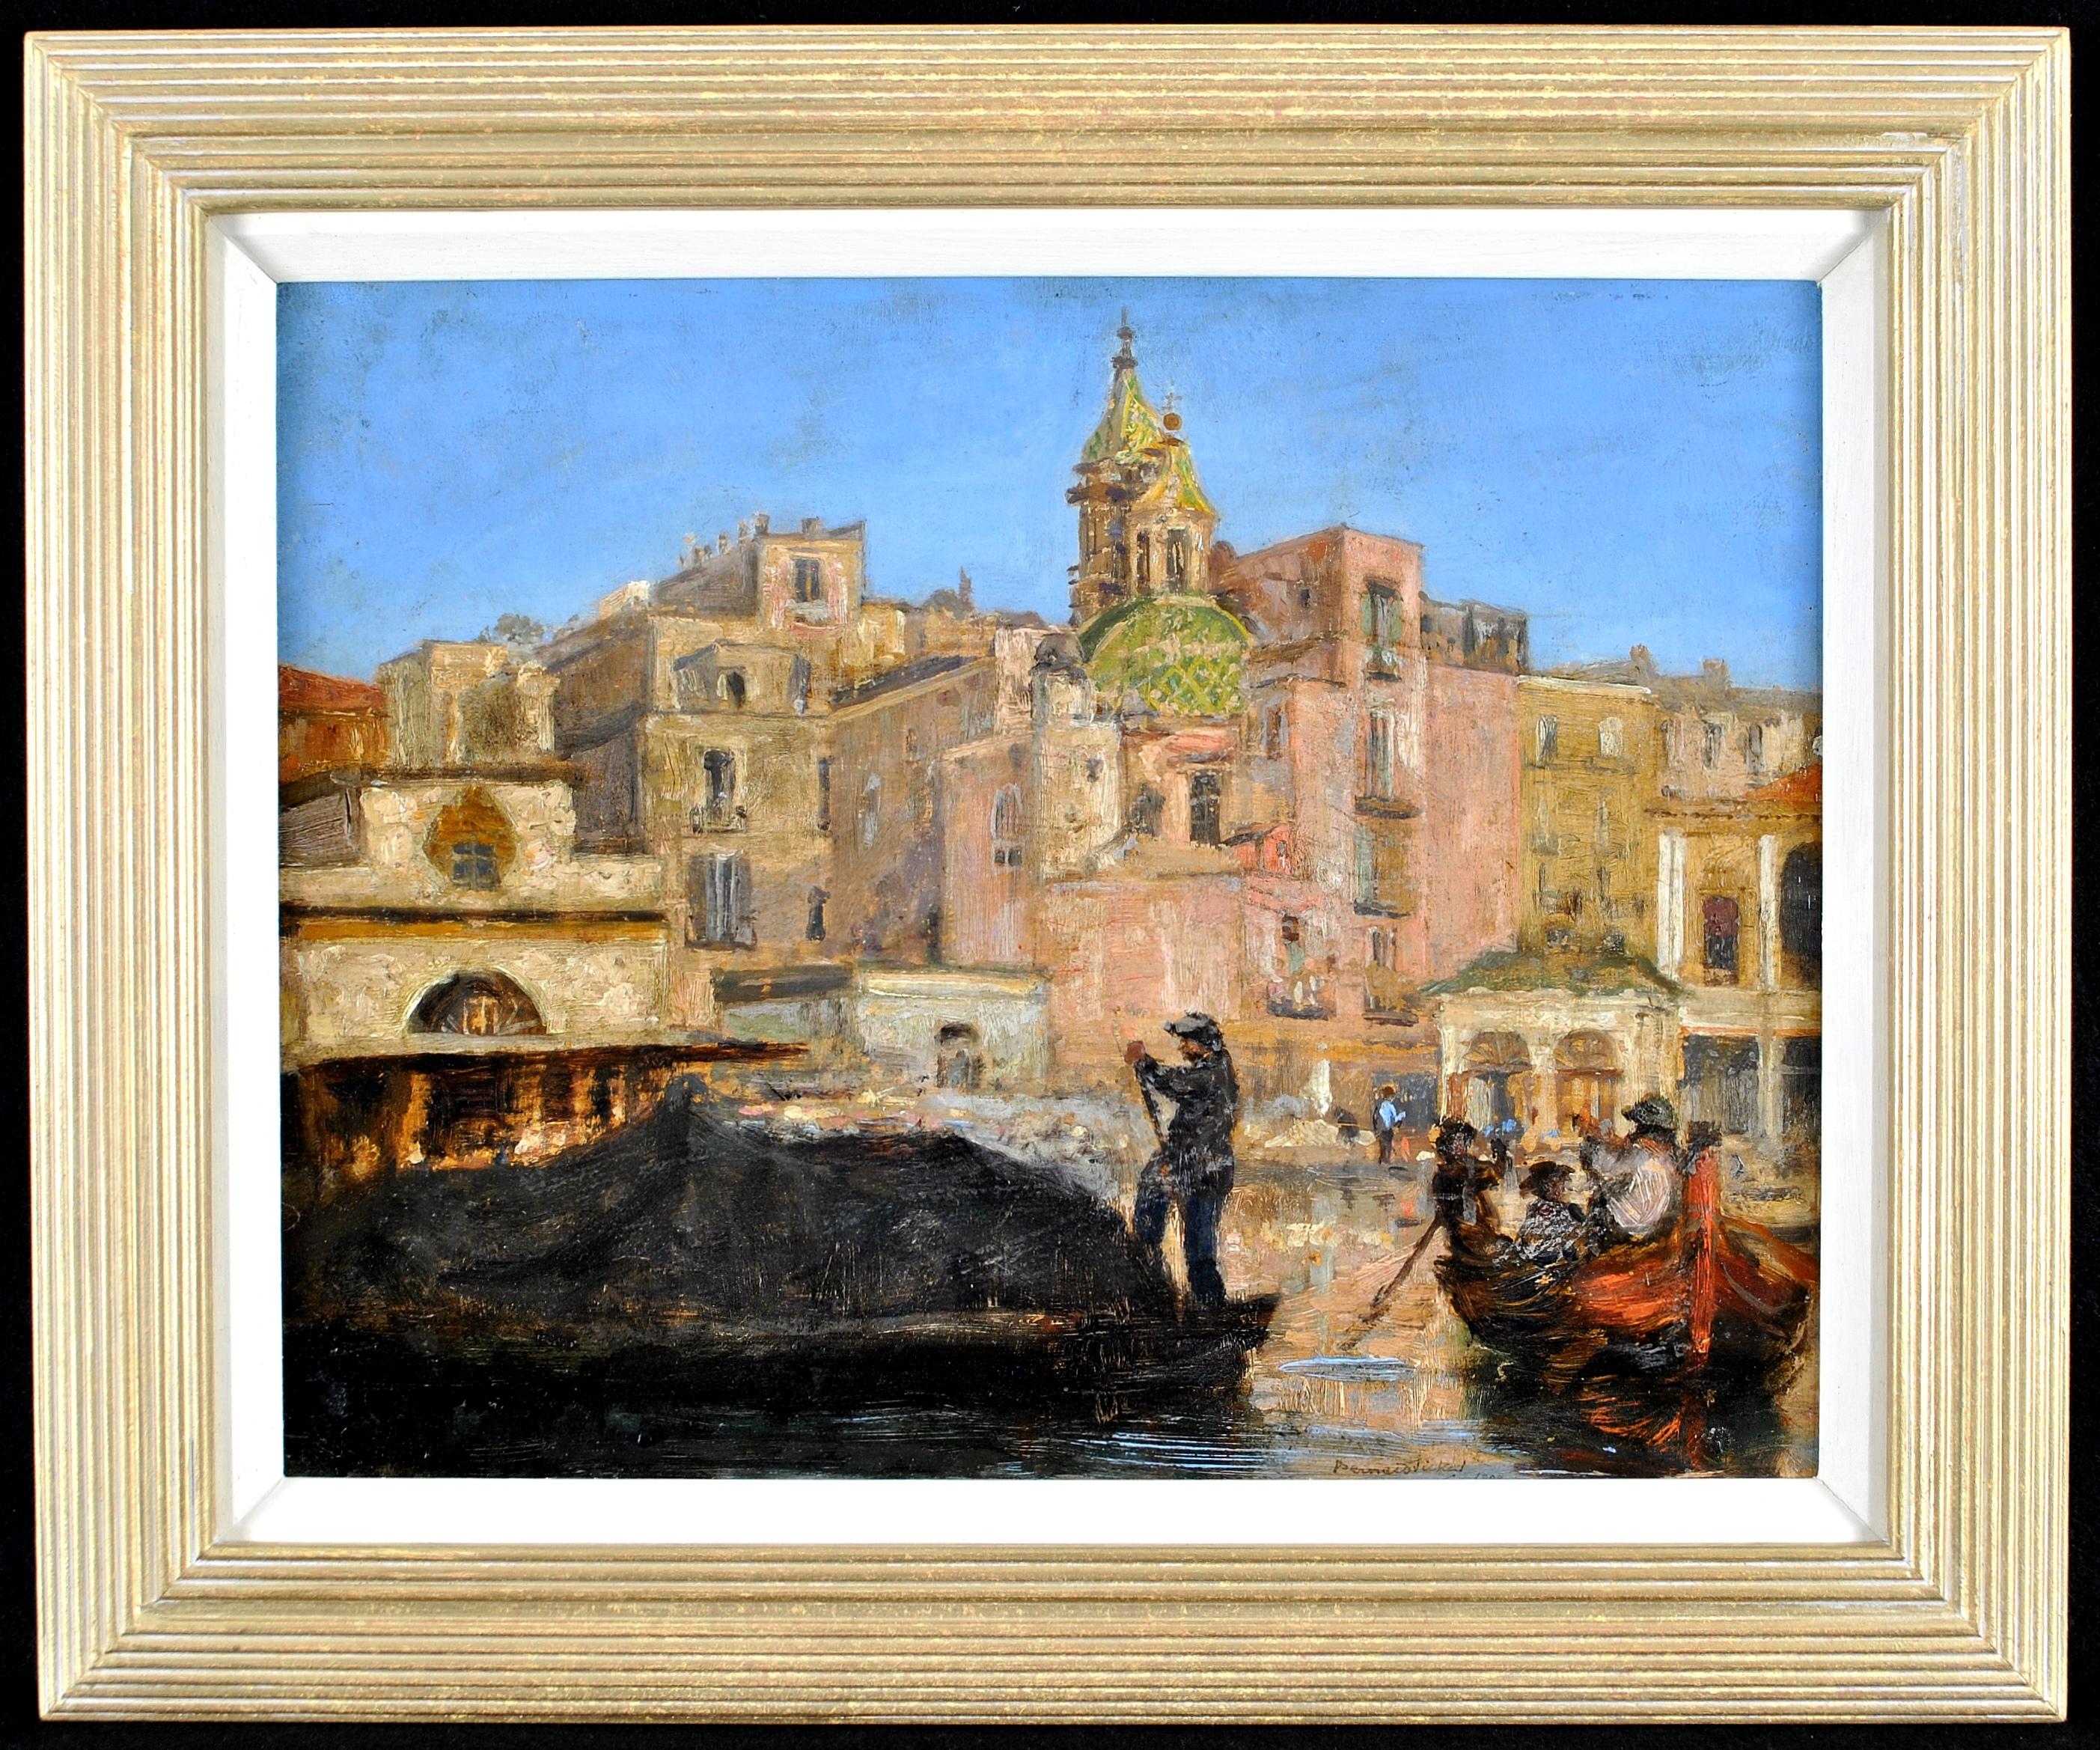 Landscape Painting Bernard Sickert - The Custom House, Naples - Peinture de paysage impressionniste moderne britannique en Italie